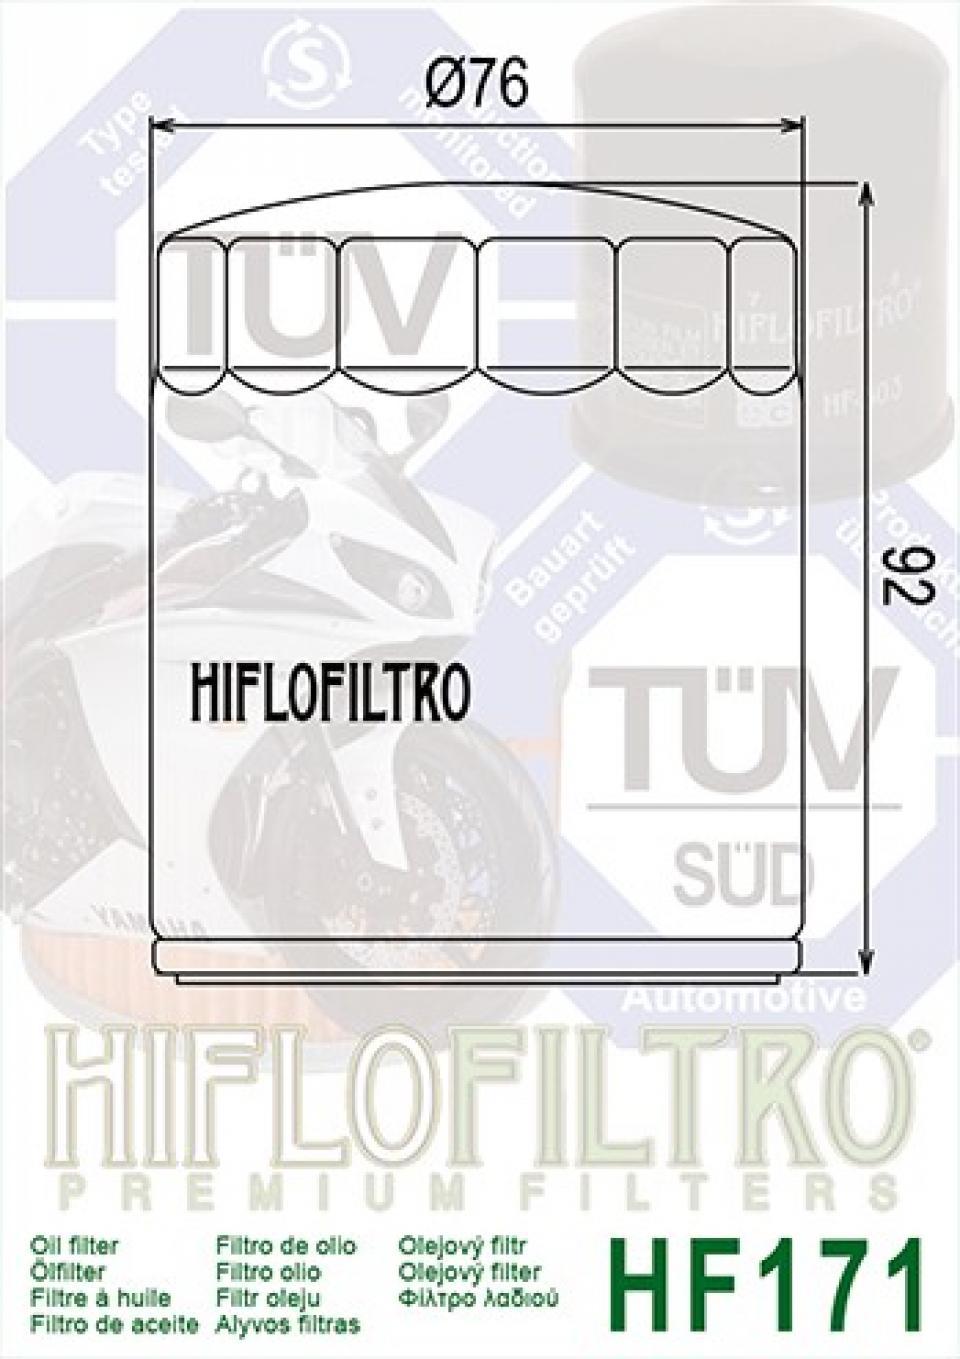 Filtre à huile Hiflo Filtro pour Moto Buell 1000 S1 1997-2002 HF171B Neuf